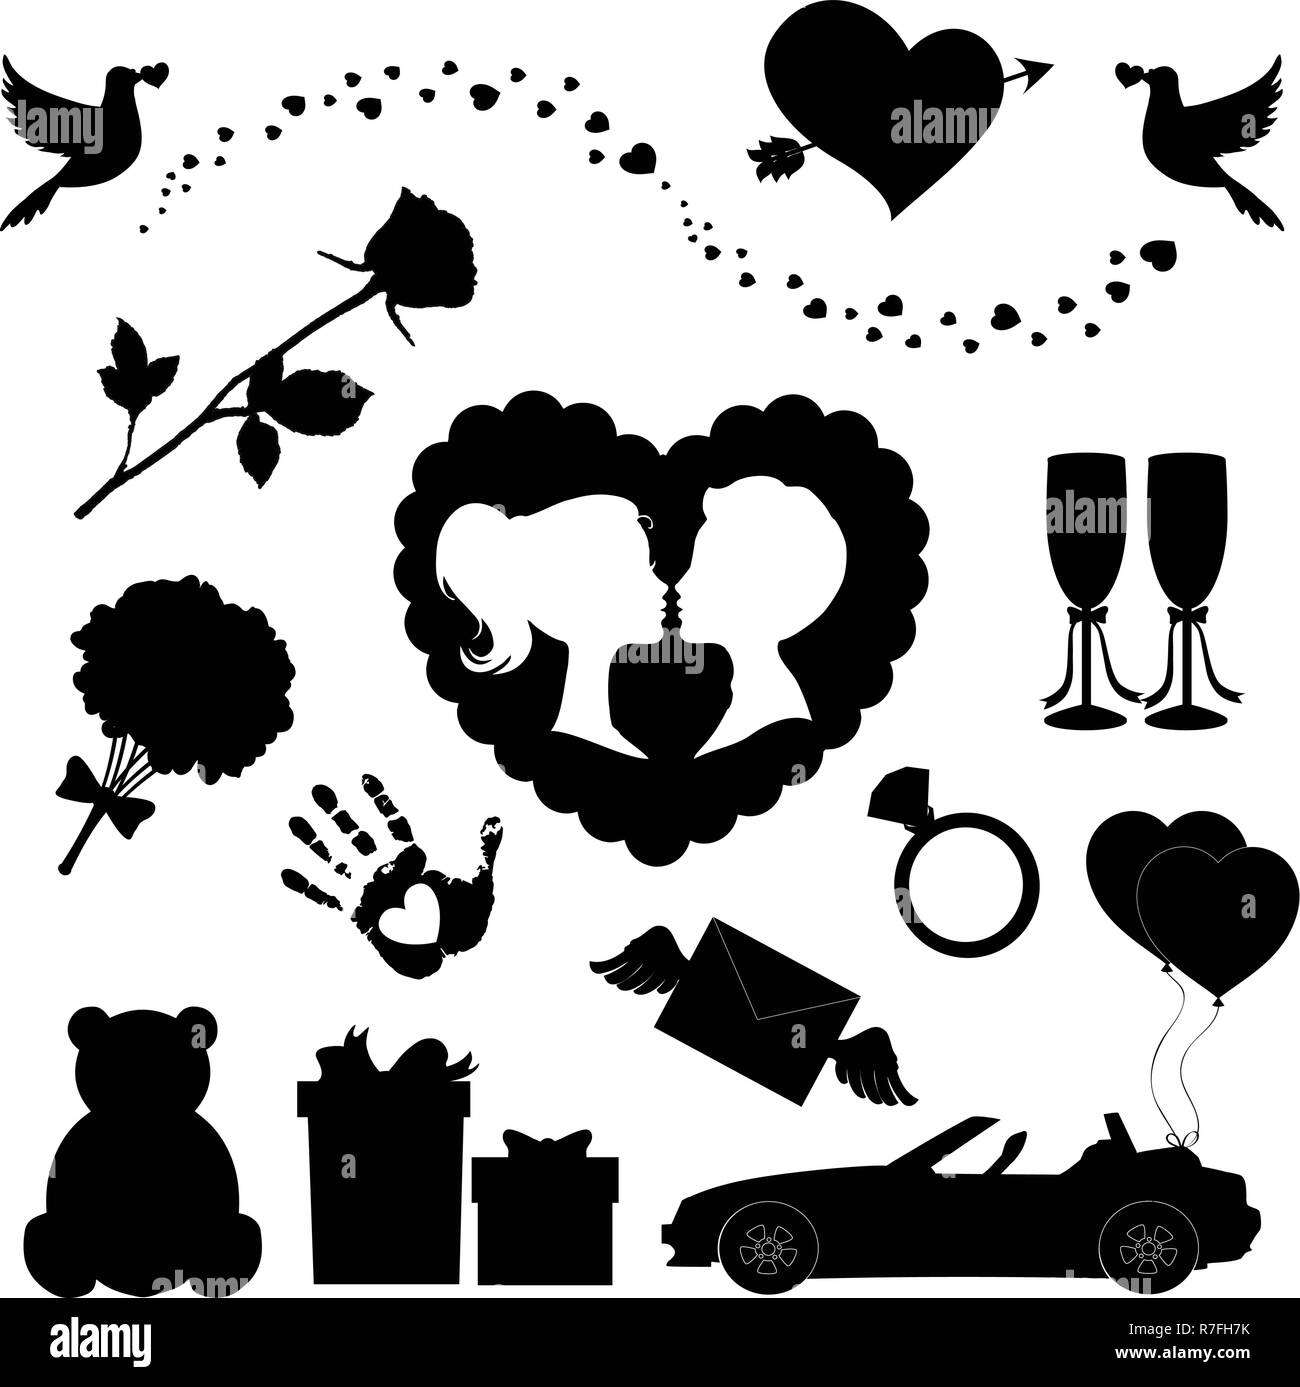 Vektor liebe Symbole 14 editierbare gefüllt Valentine silhouette Schilder. Teddybär, Herzen, Ballons, Pfeil Herz, Rose, Kuss Paar, gerade geheiratet c Stock Vektor